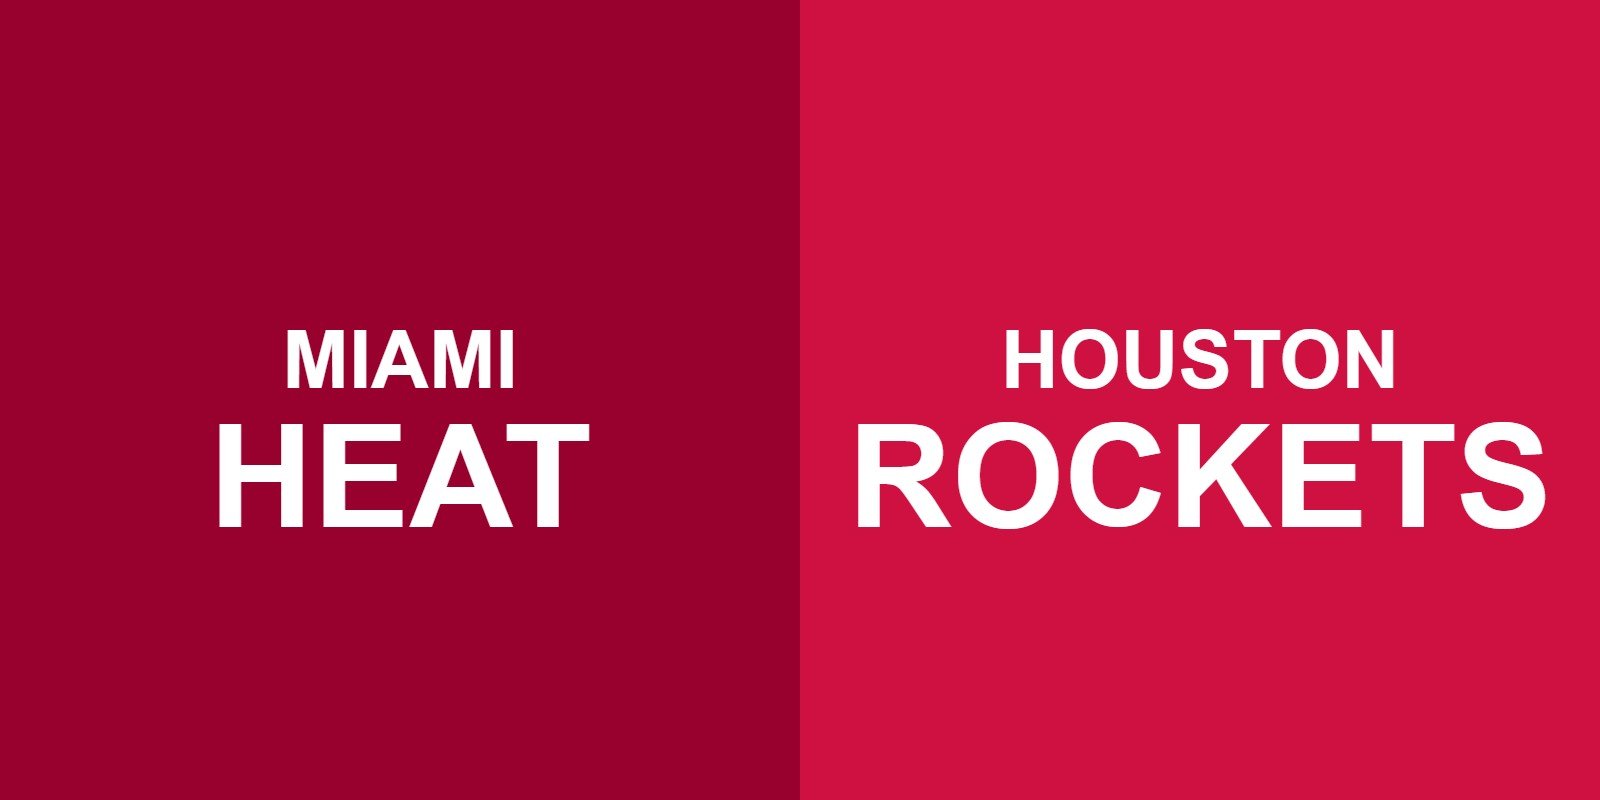 Heat vs Rockets